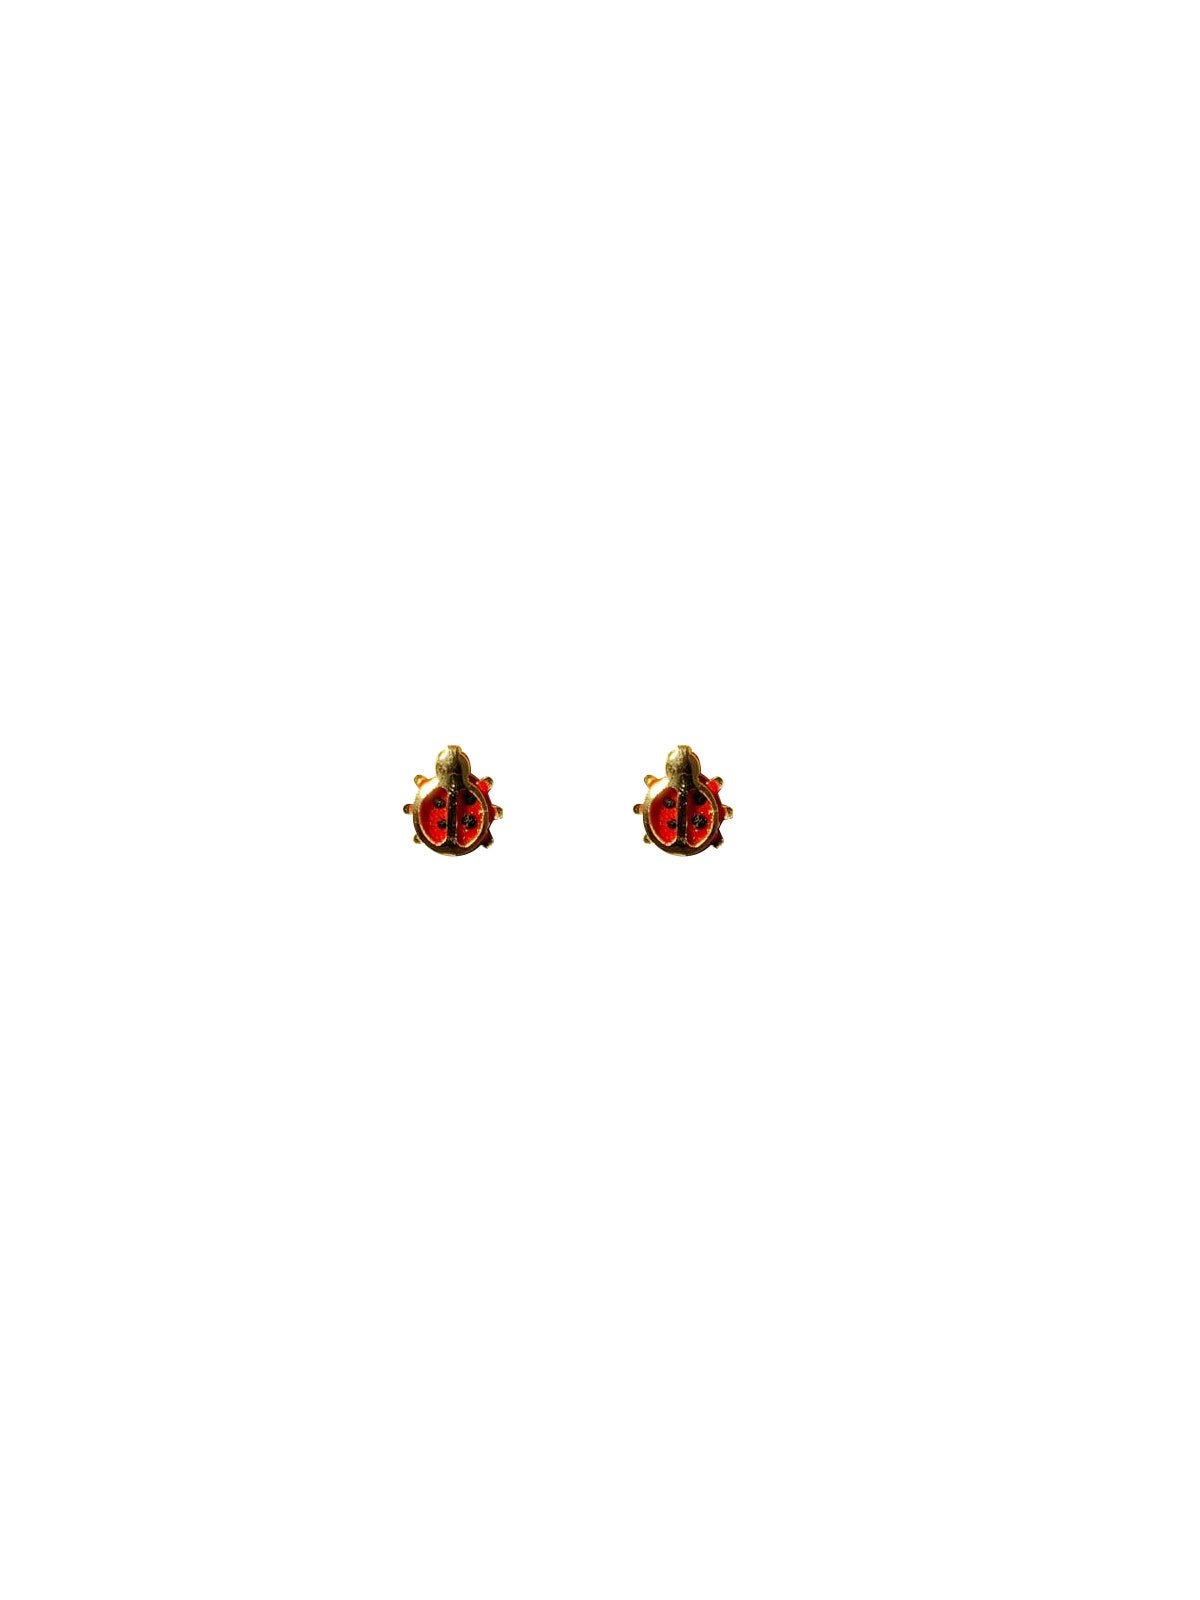 Ladybug Studs - NOA - Earrings